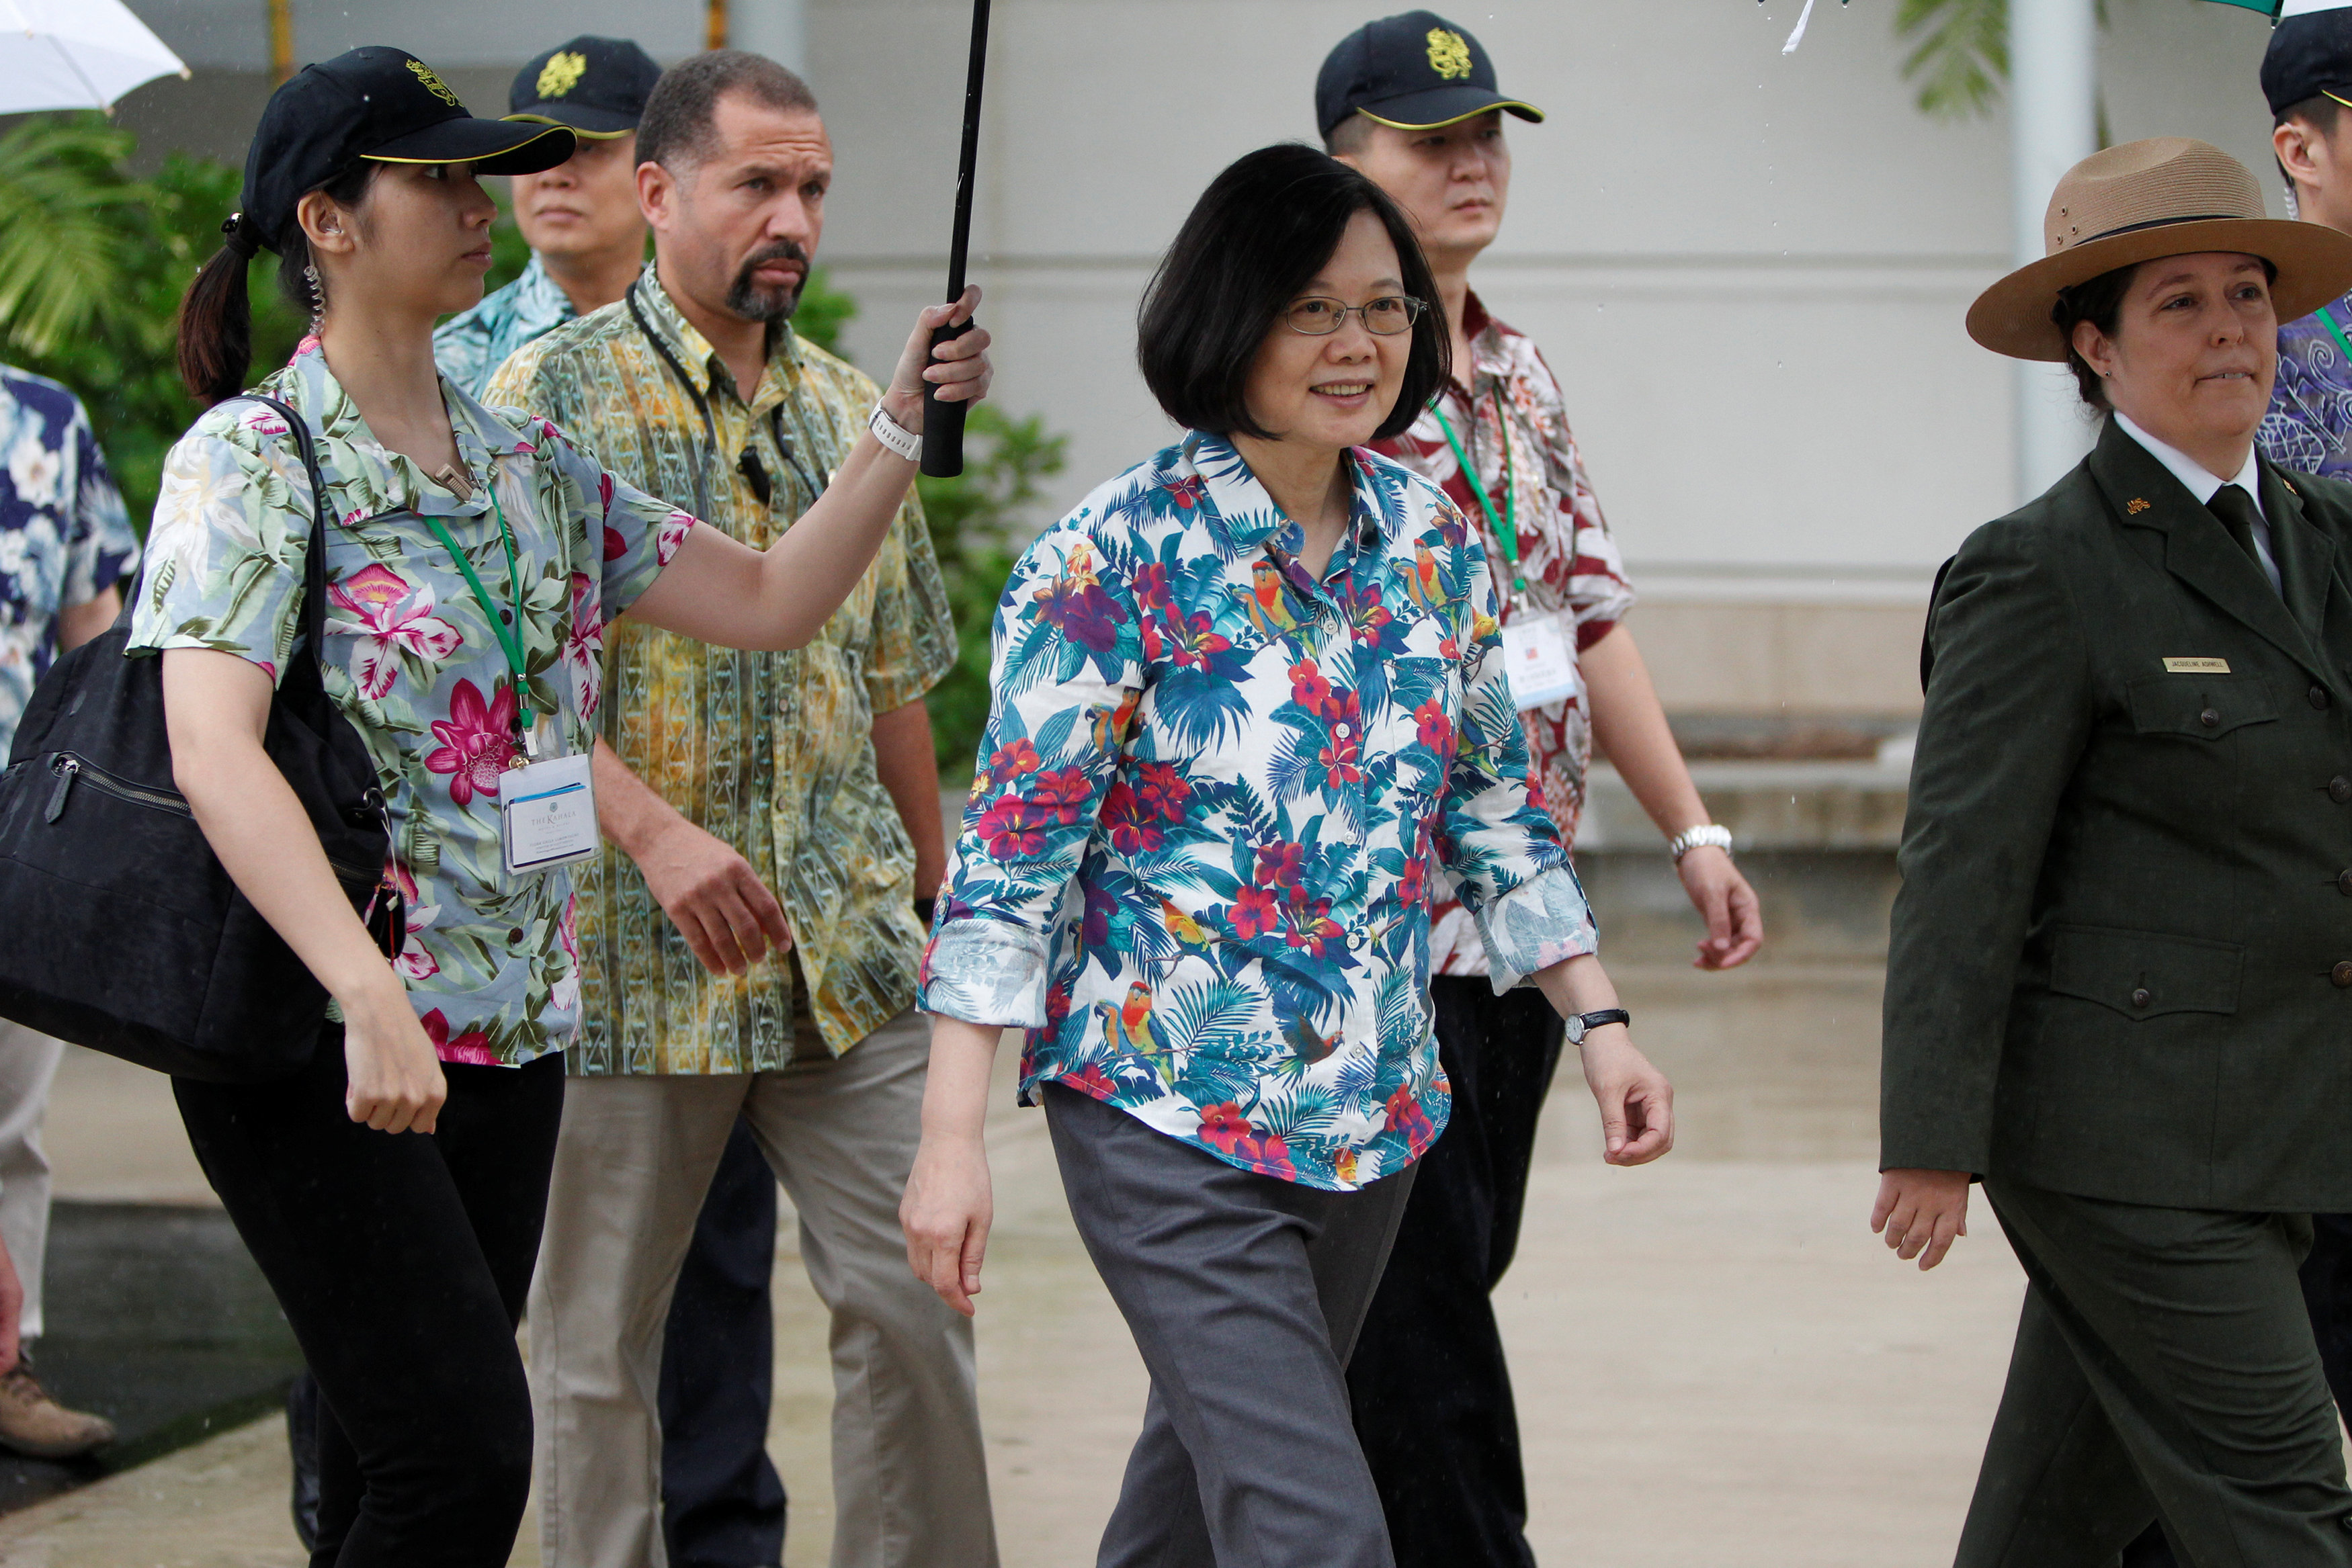 لحظة وصول رئيسة تايوان تساى إينج وين إلى هونولولو